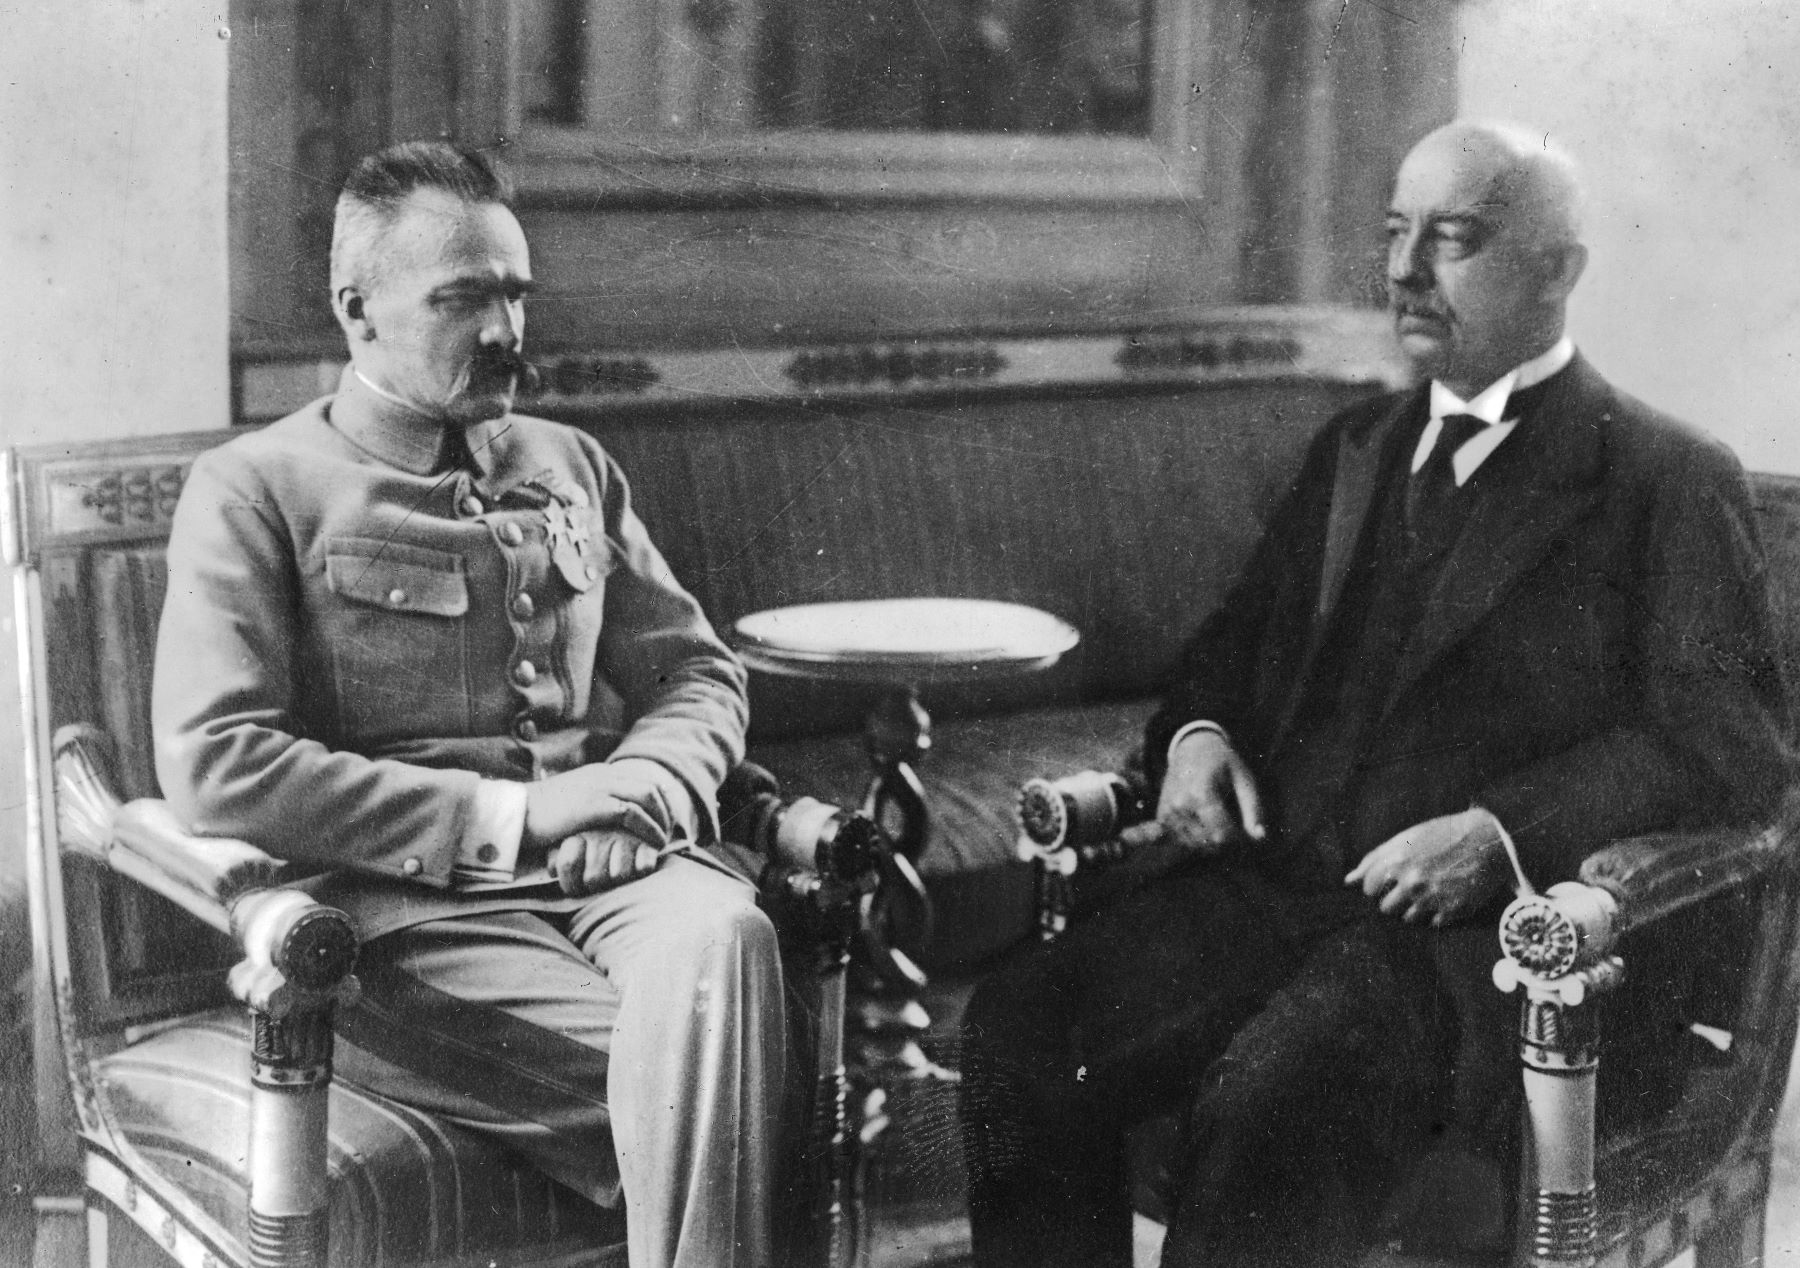 Gabriel Narutowicz z Józefem Piłsudskim siedzą obok siebie podczas spotkania w Belwederze.